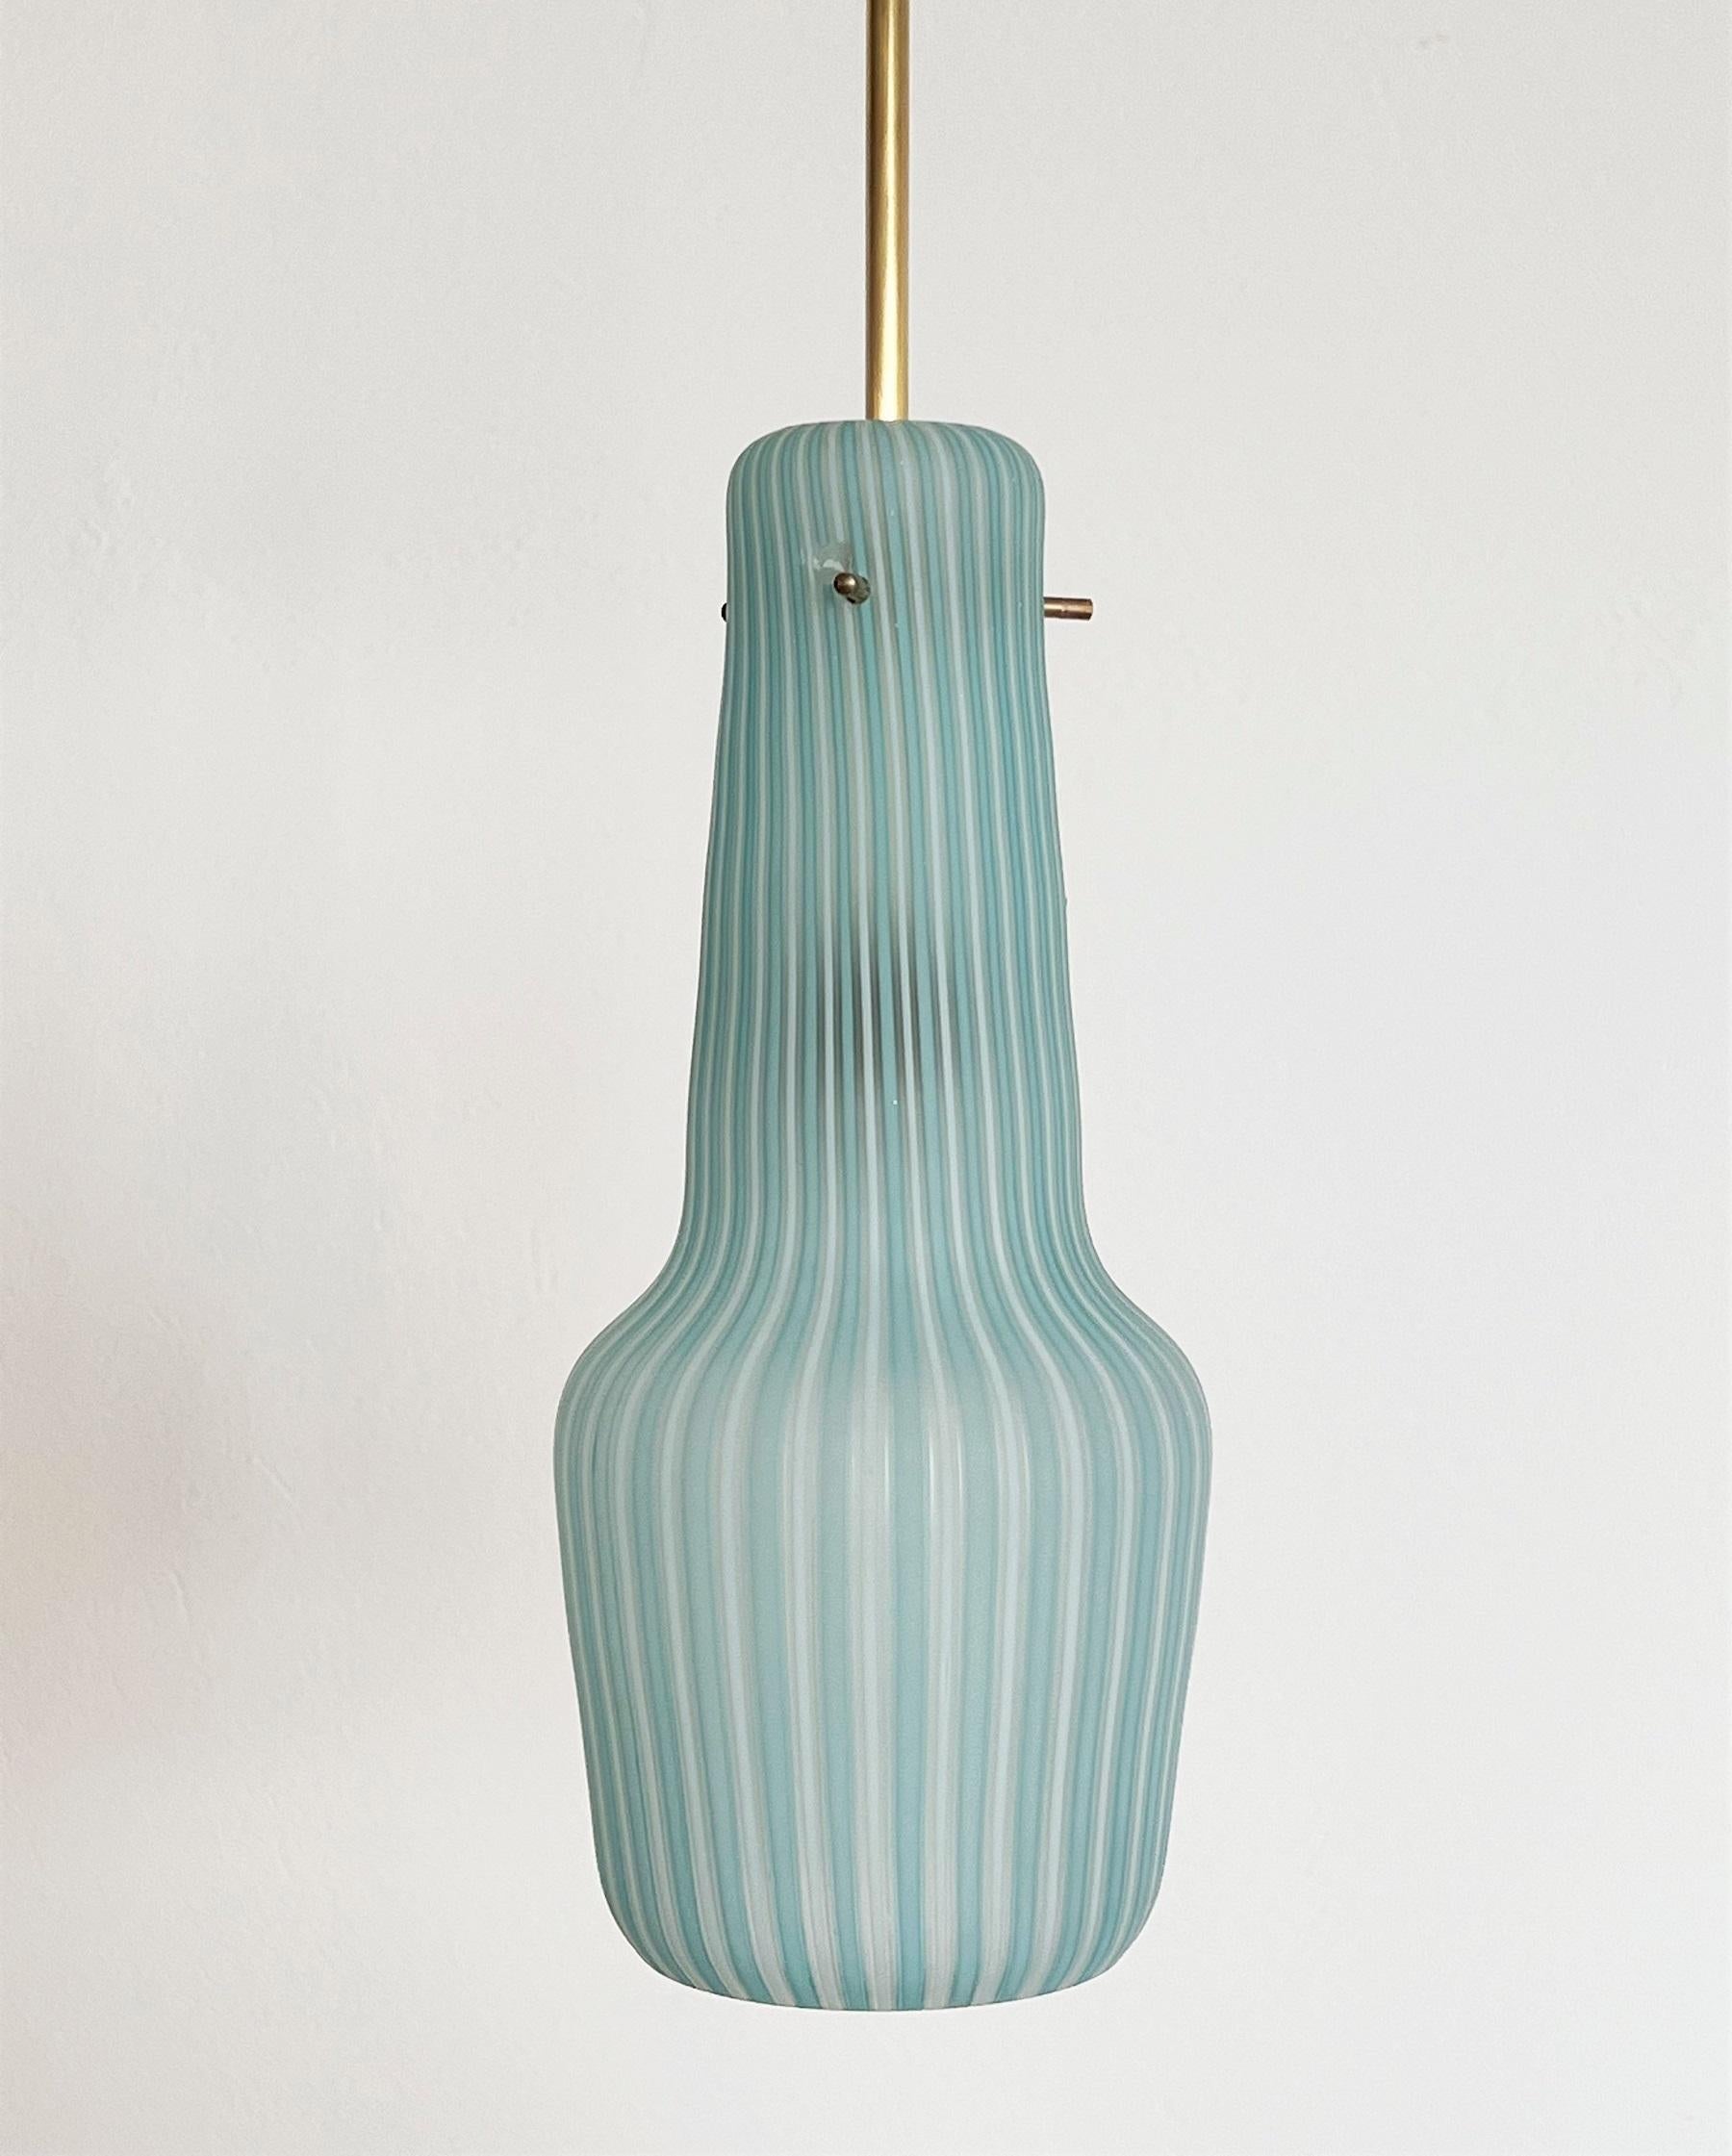 Belle petite lampe à suspension ou lanterne de la production de verre Venini en Italie dans les années 1950.
Le verre est fabriqué à la main et présente des rayures régulières blanc-bleu et une très belle forme. 
La couleur est tout simplement